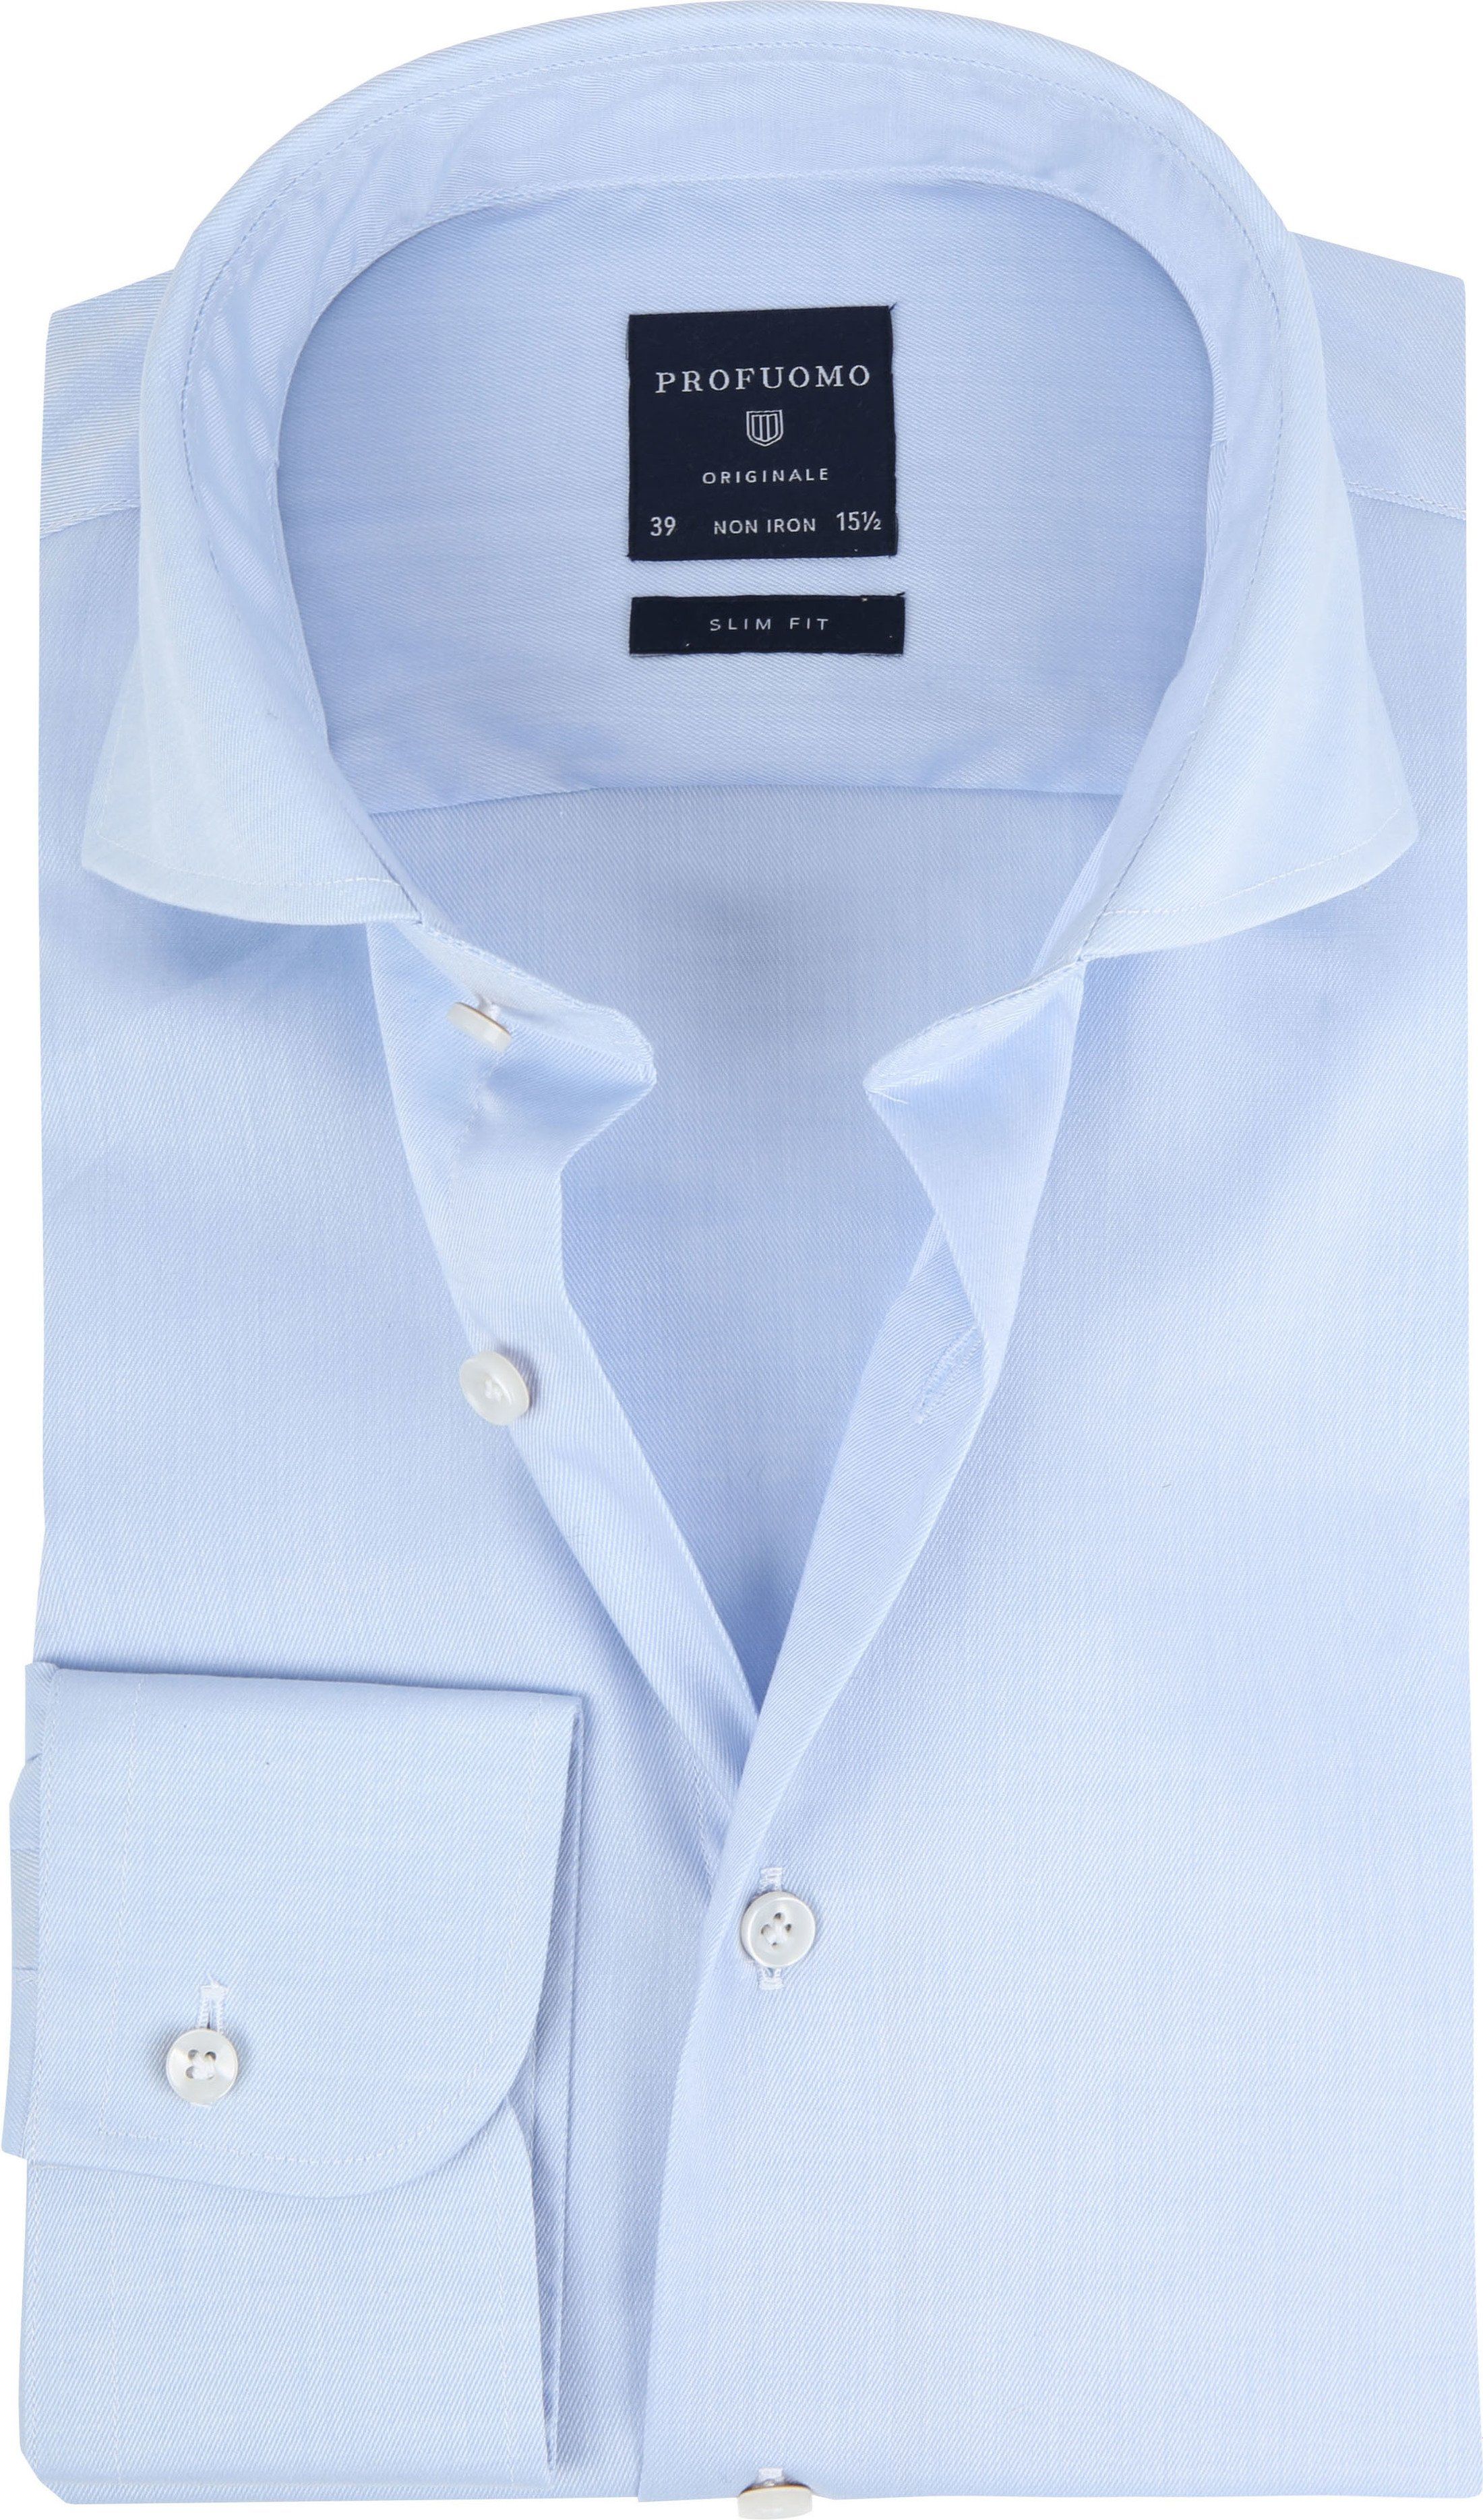 Profuomo Shirt Cutaway Blue size 14.5